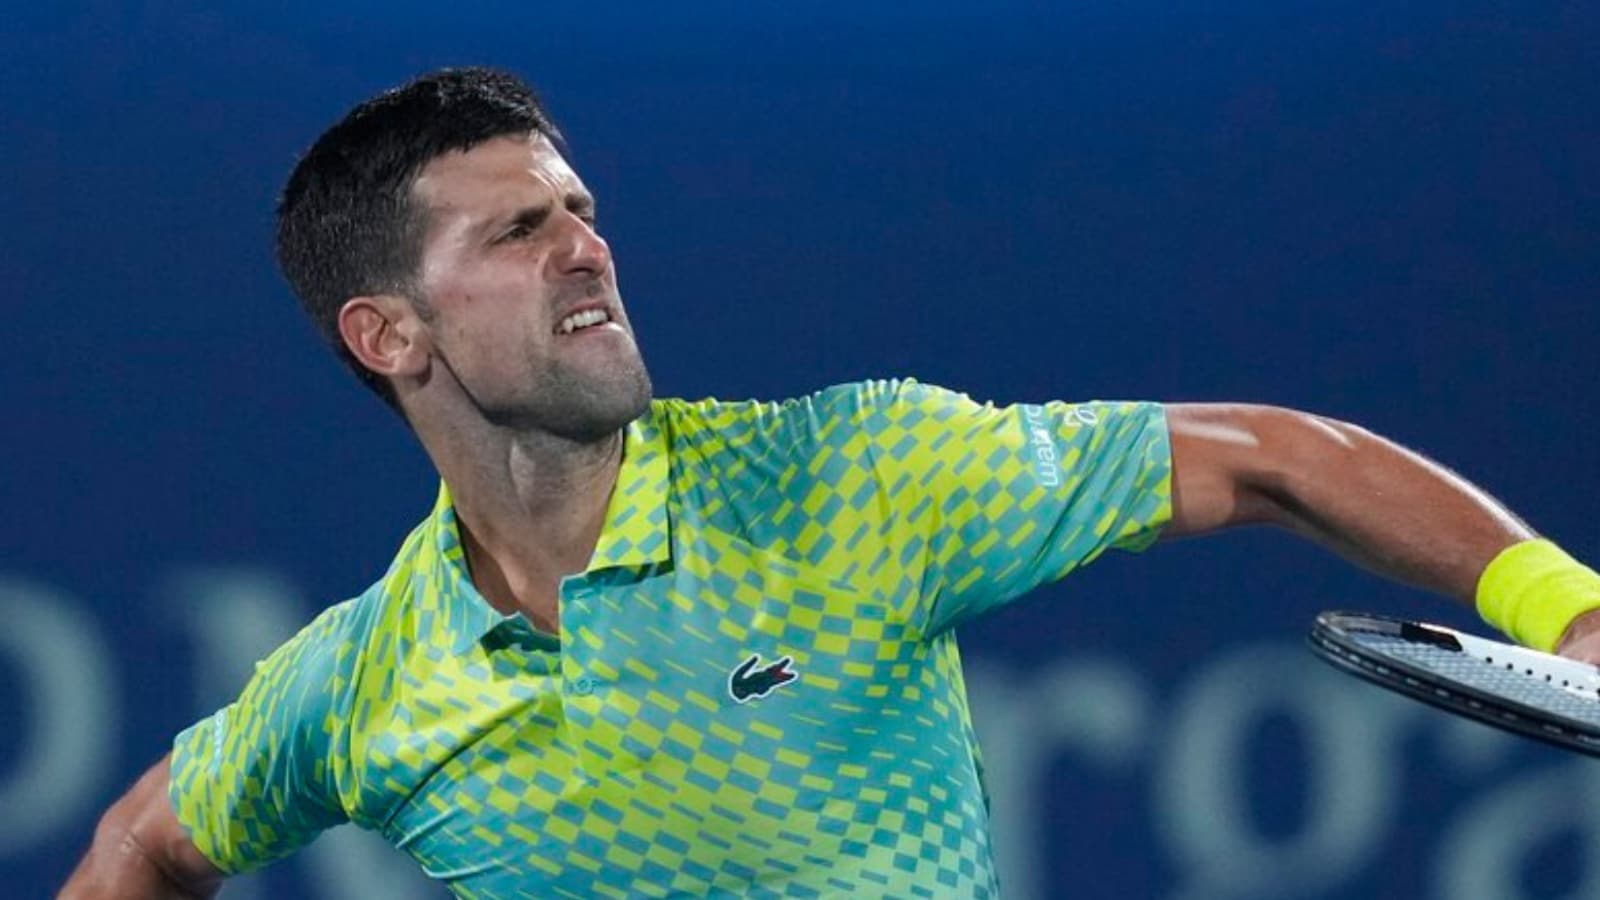 Dubai Tennis Championships: World No. 1 Novak Djokovic survives